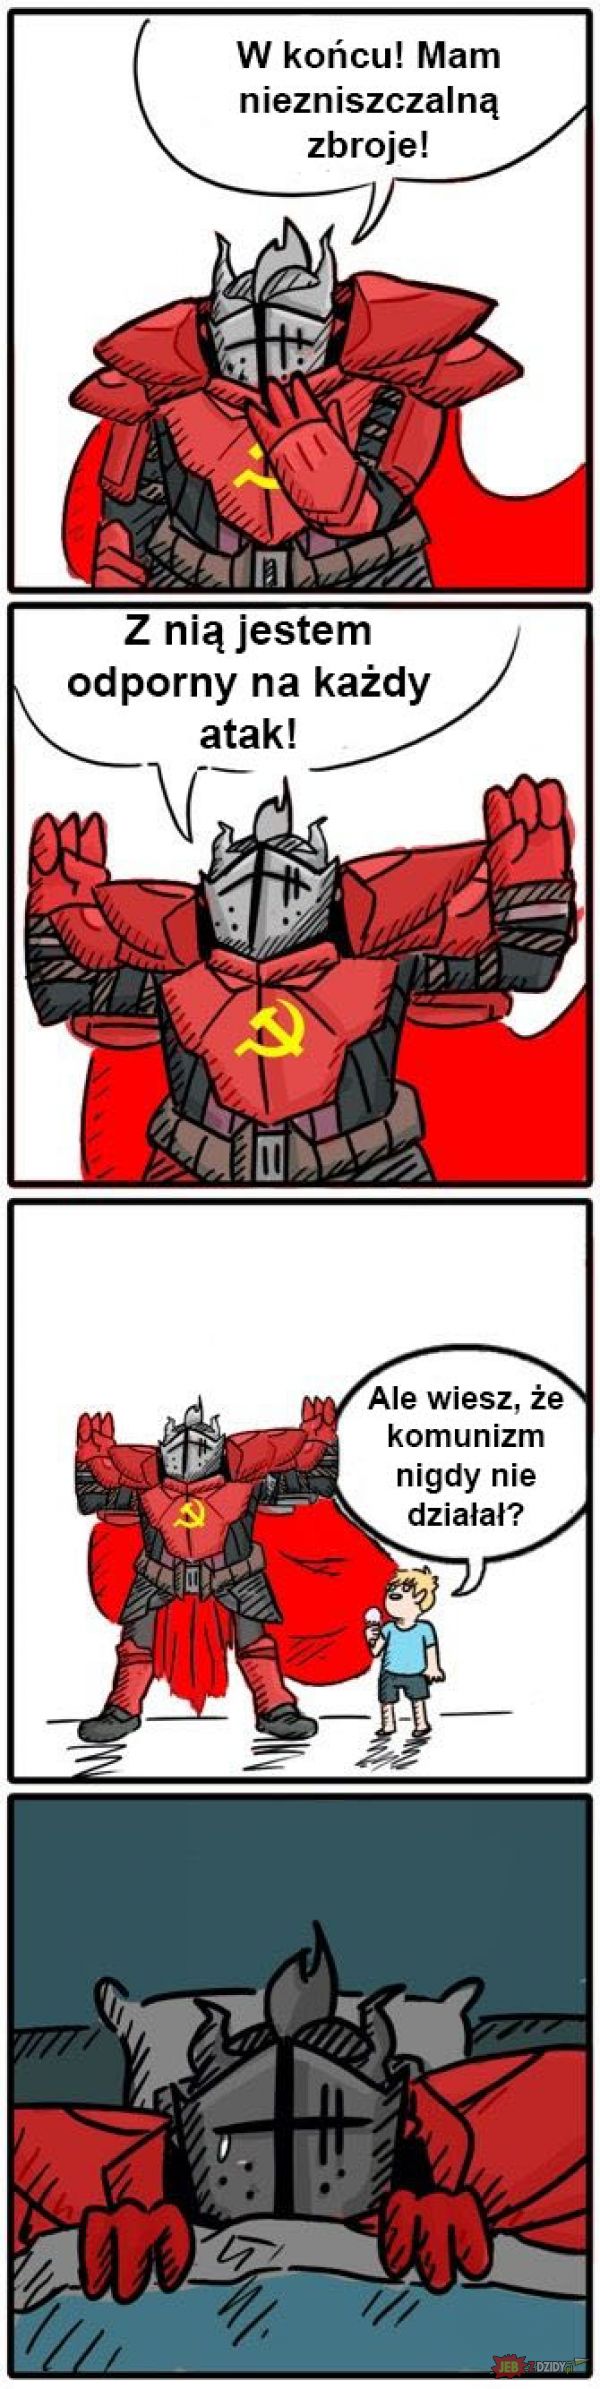 Komunizm xD